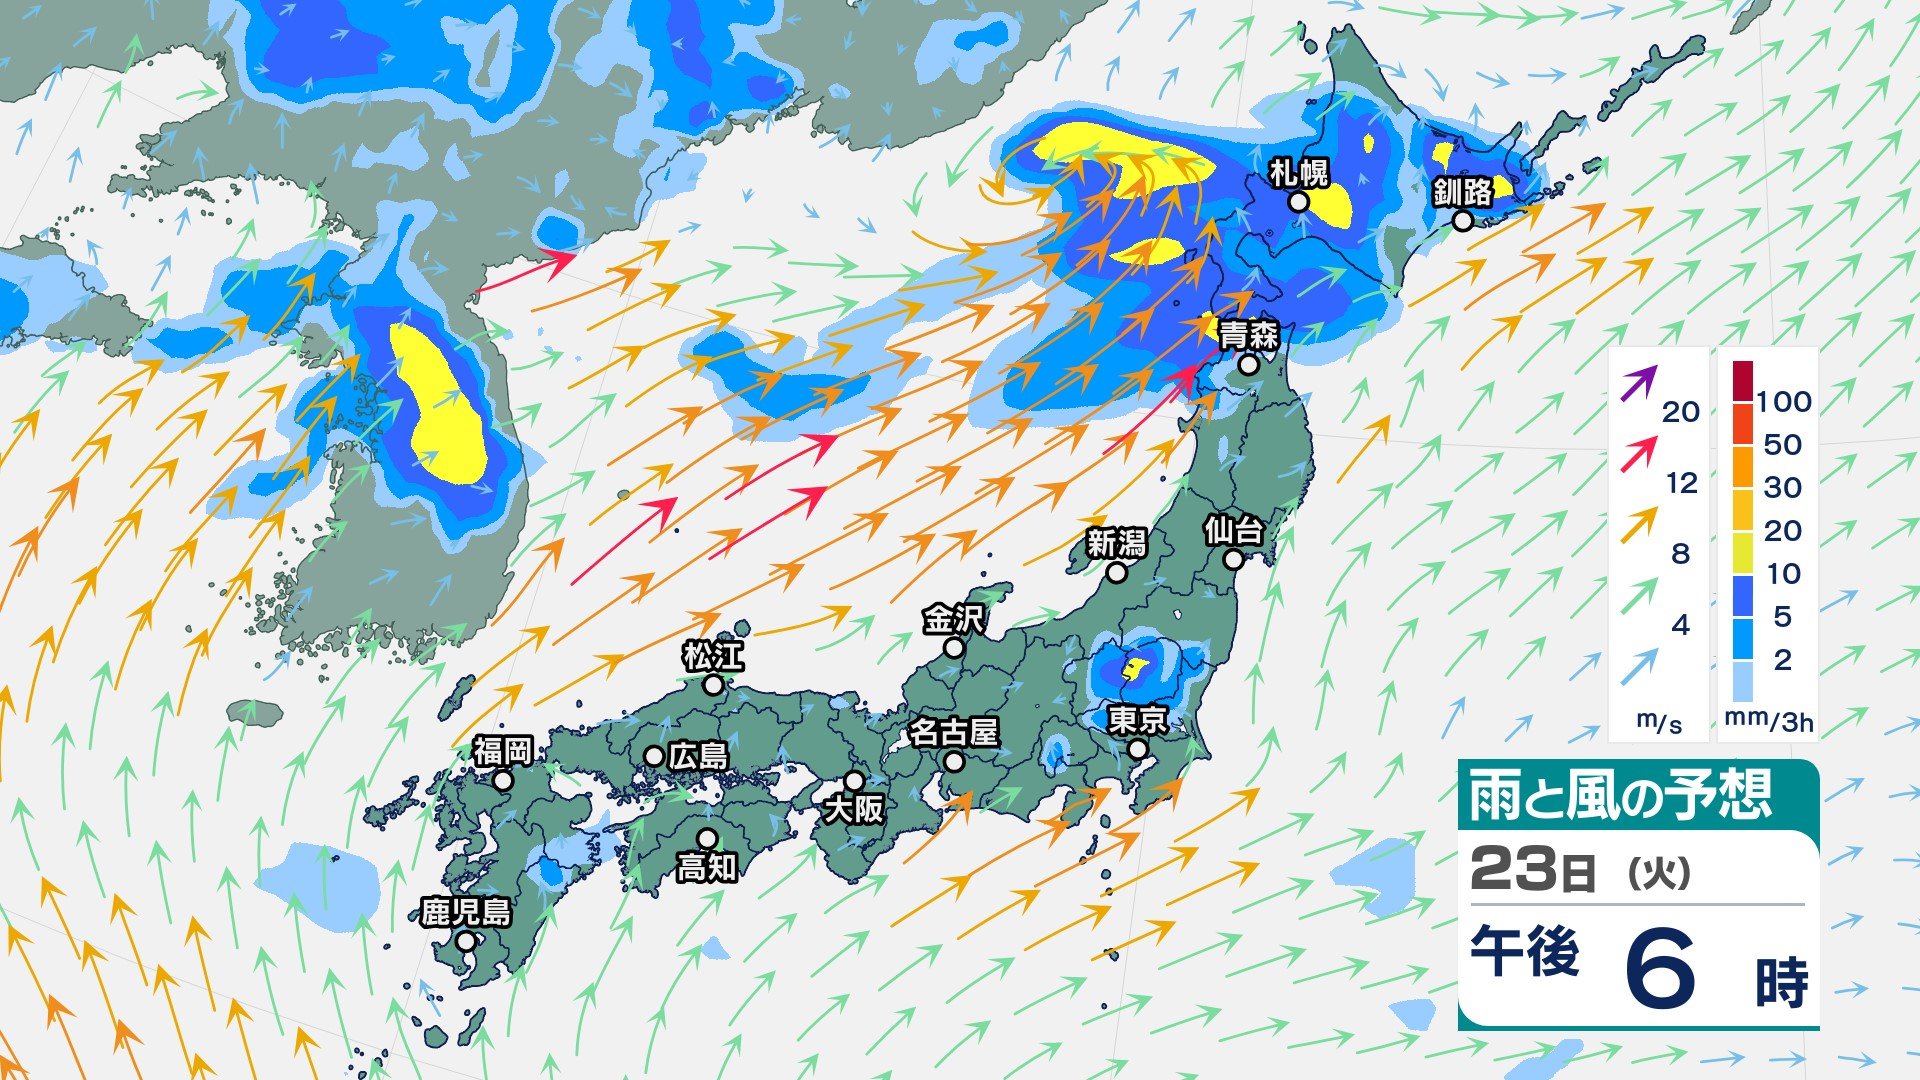 関東甲信や東北、北海道では激しい雨の恐れ　“警報級大雨”となる所も　広い範囲で大気の状態が不安定に　【今後の雨と風のシミュレーション】